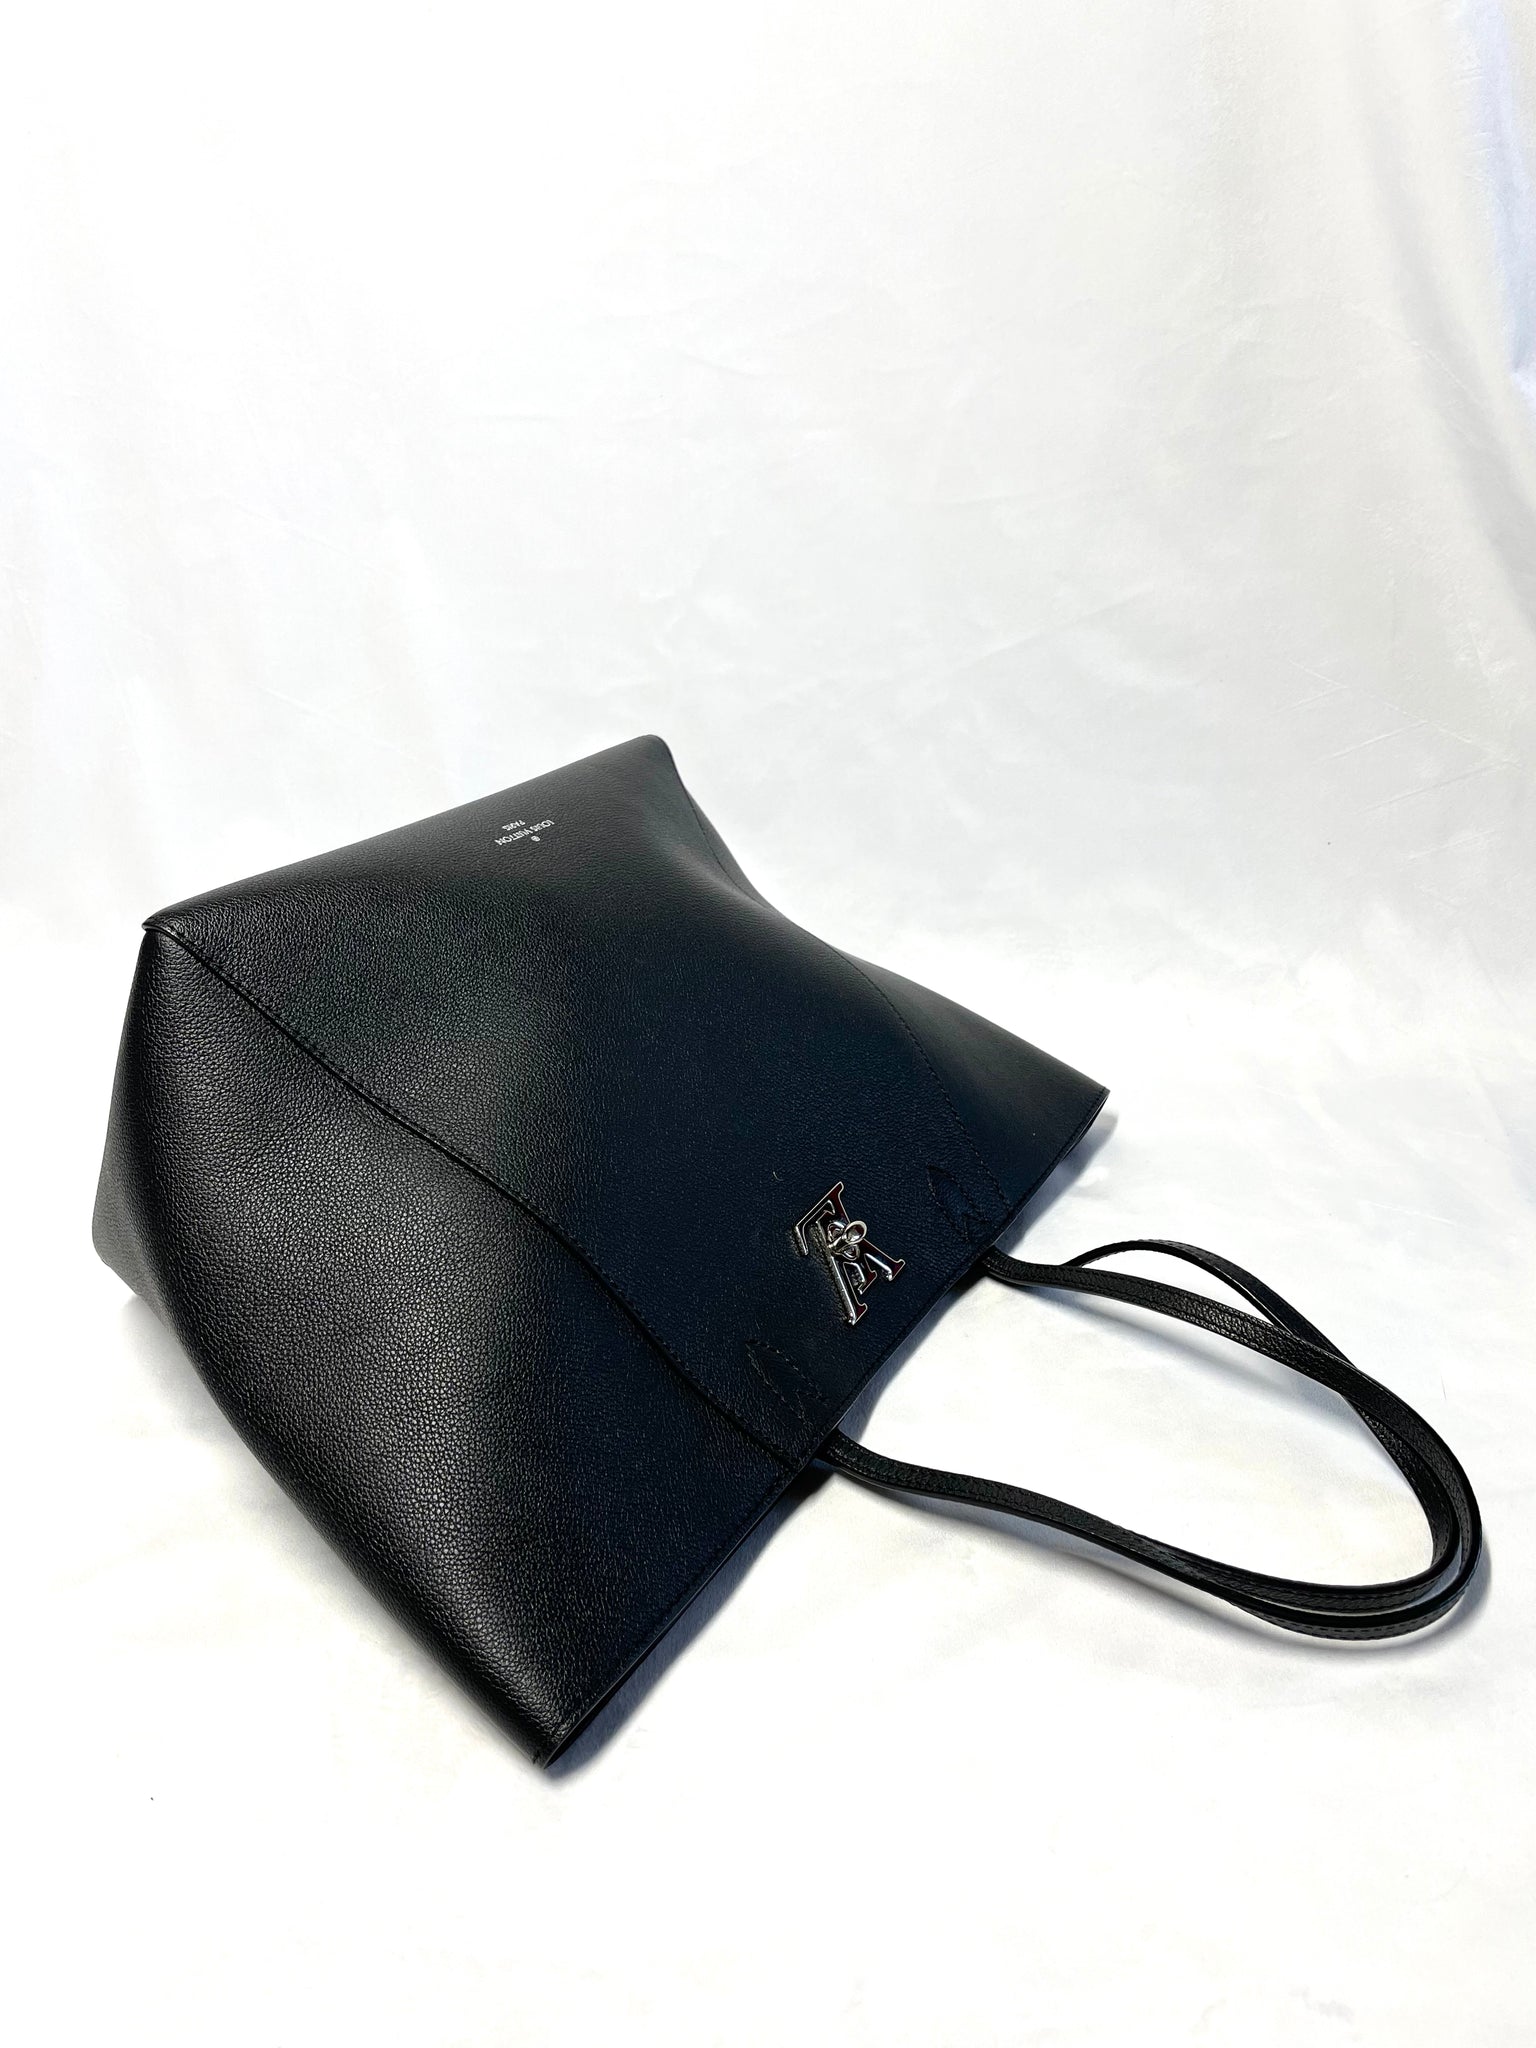 Louis Vuitton, Bags, Authentic 2895 Louis Vuitton Lockme Cabas Tote  Vanille Noir Leather Handbag